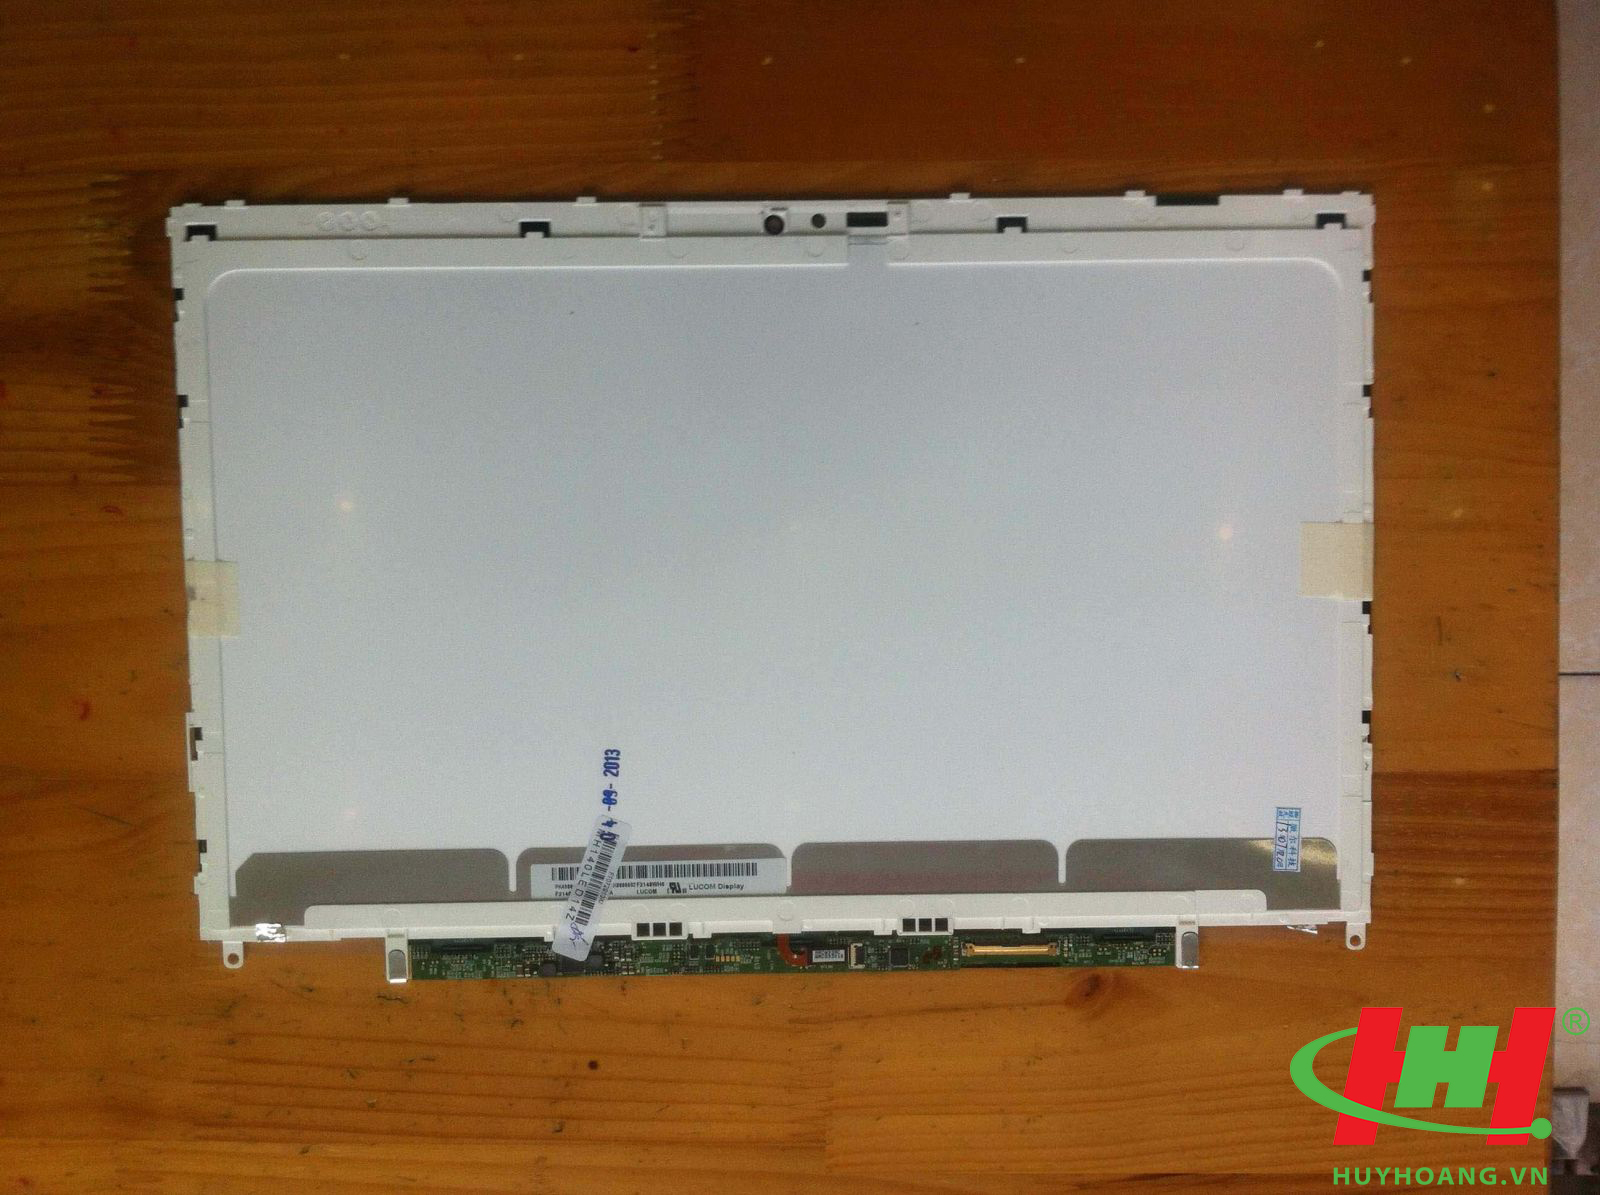 LCD LAPTOP 14.0" LED (DELL XPS 14Z)